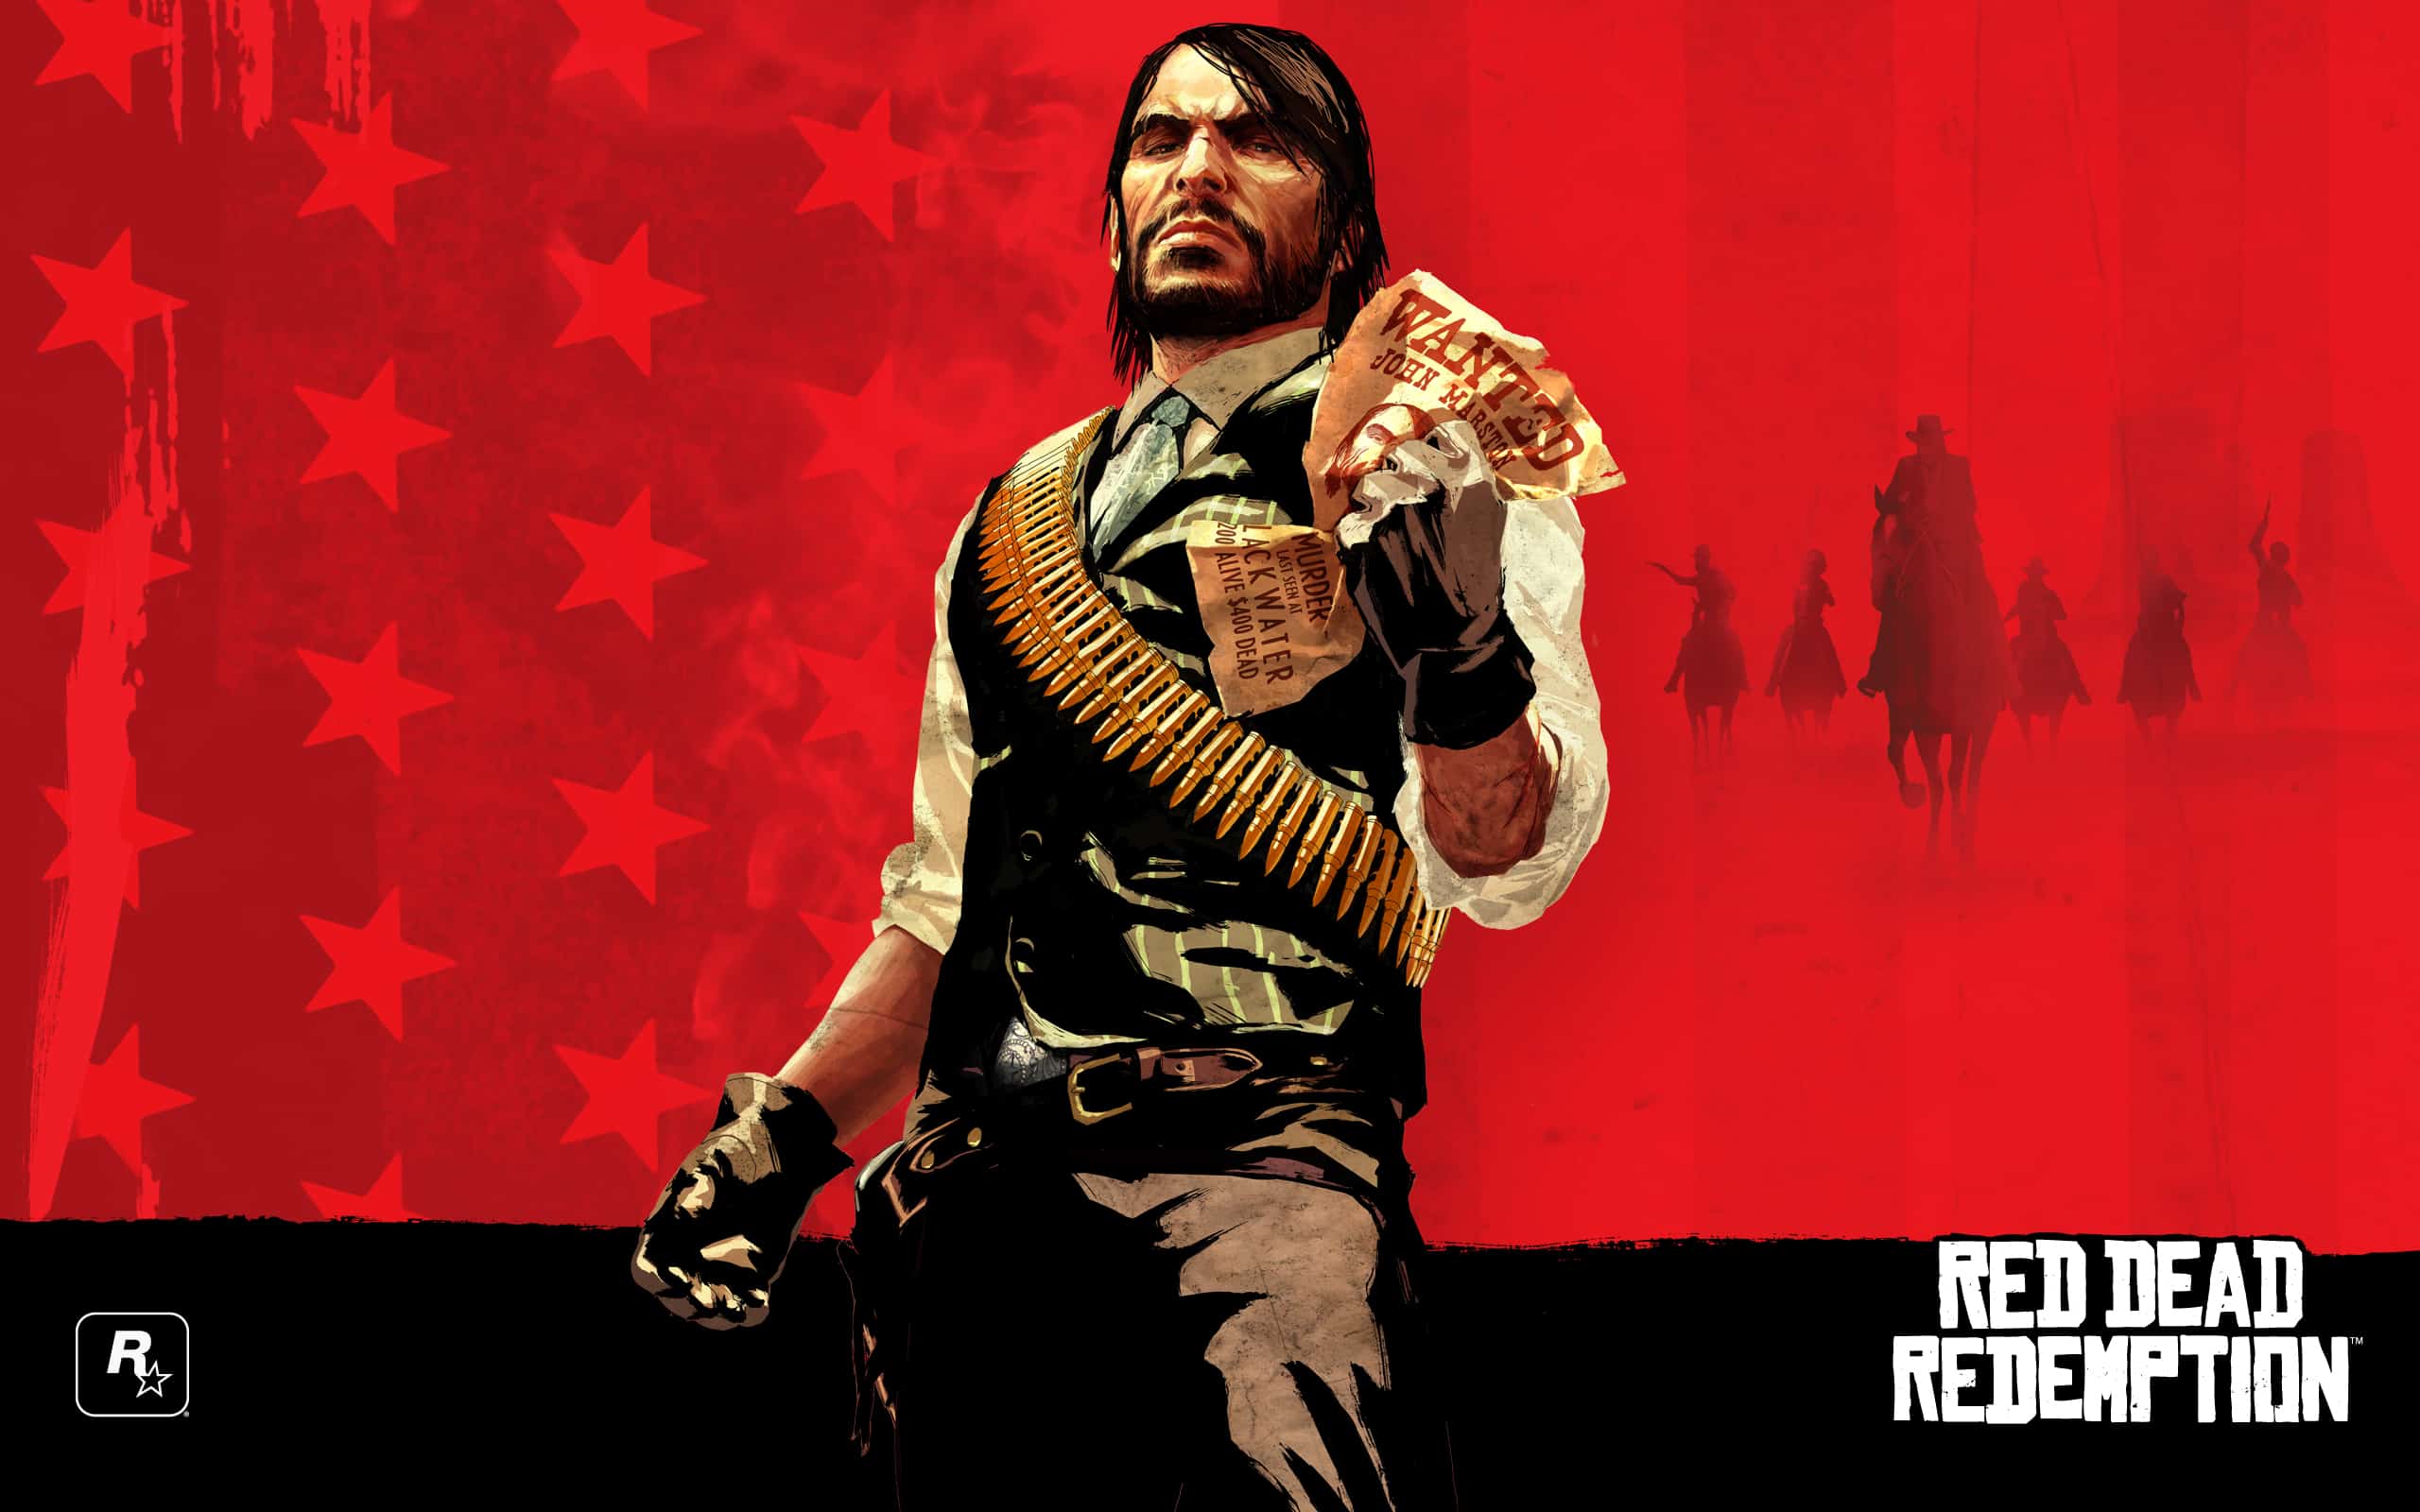 Red Dead Redemption Rockstar Games